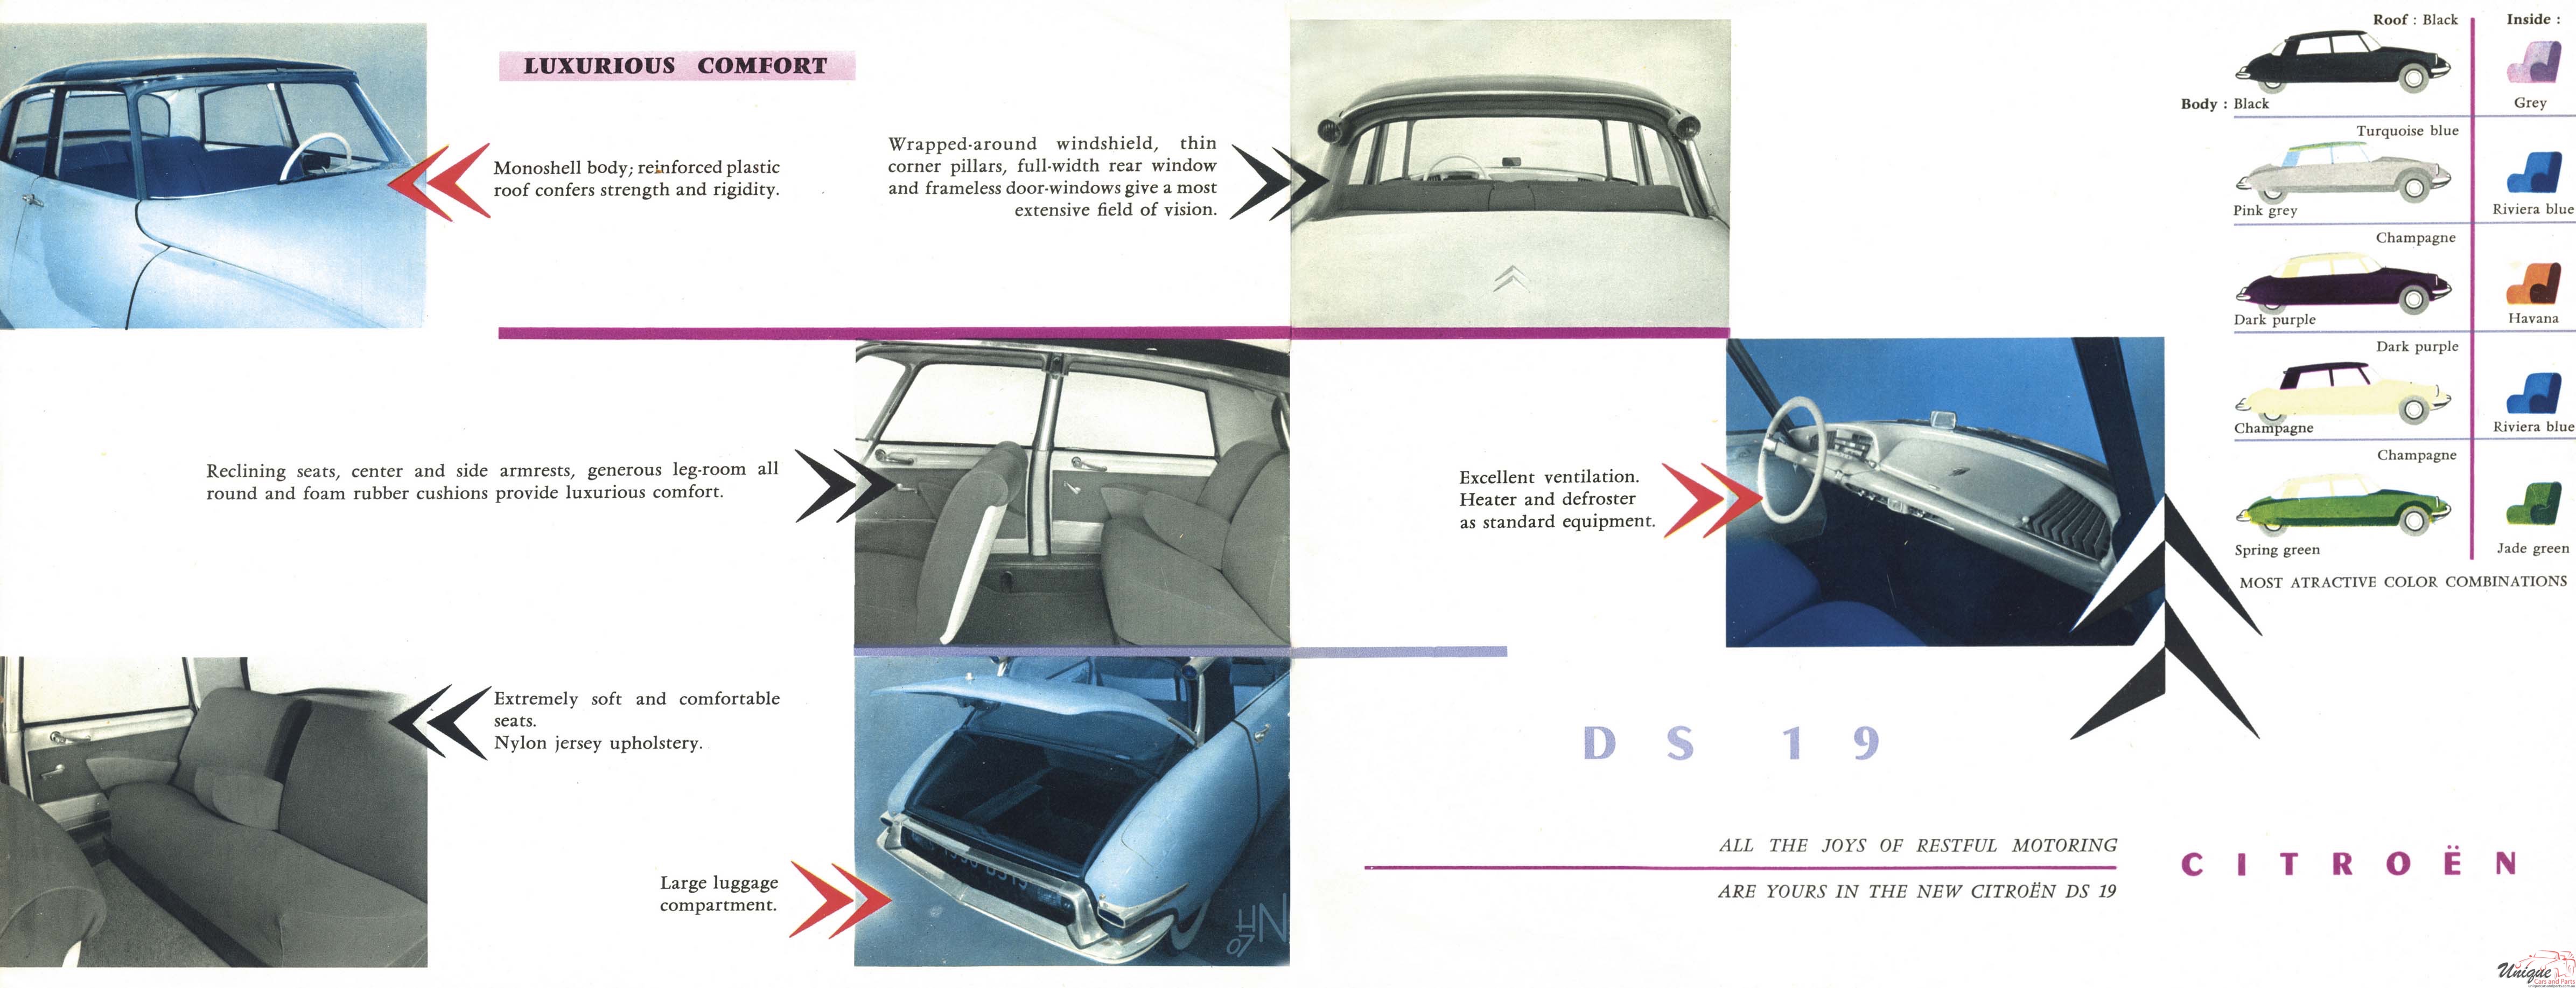 1955 Citroen DS19 Brochure Page 3